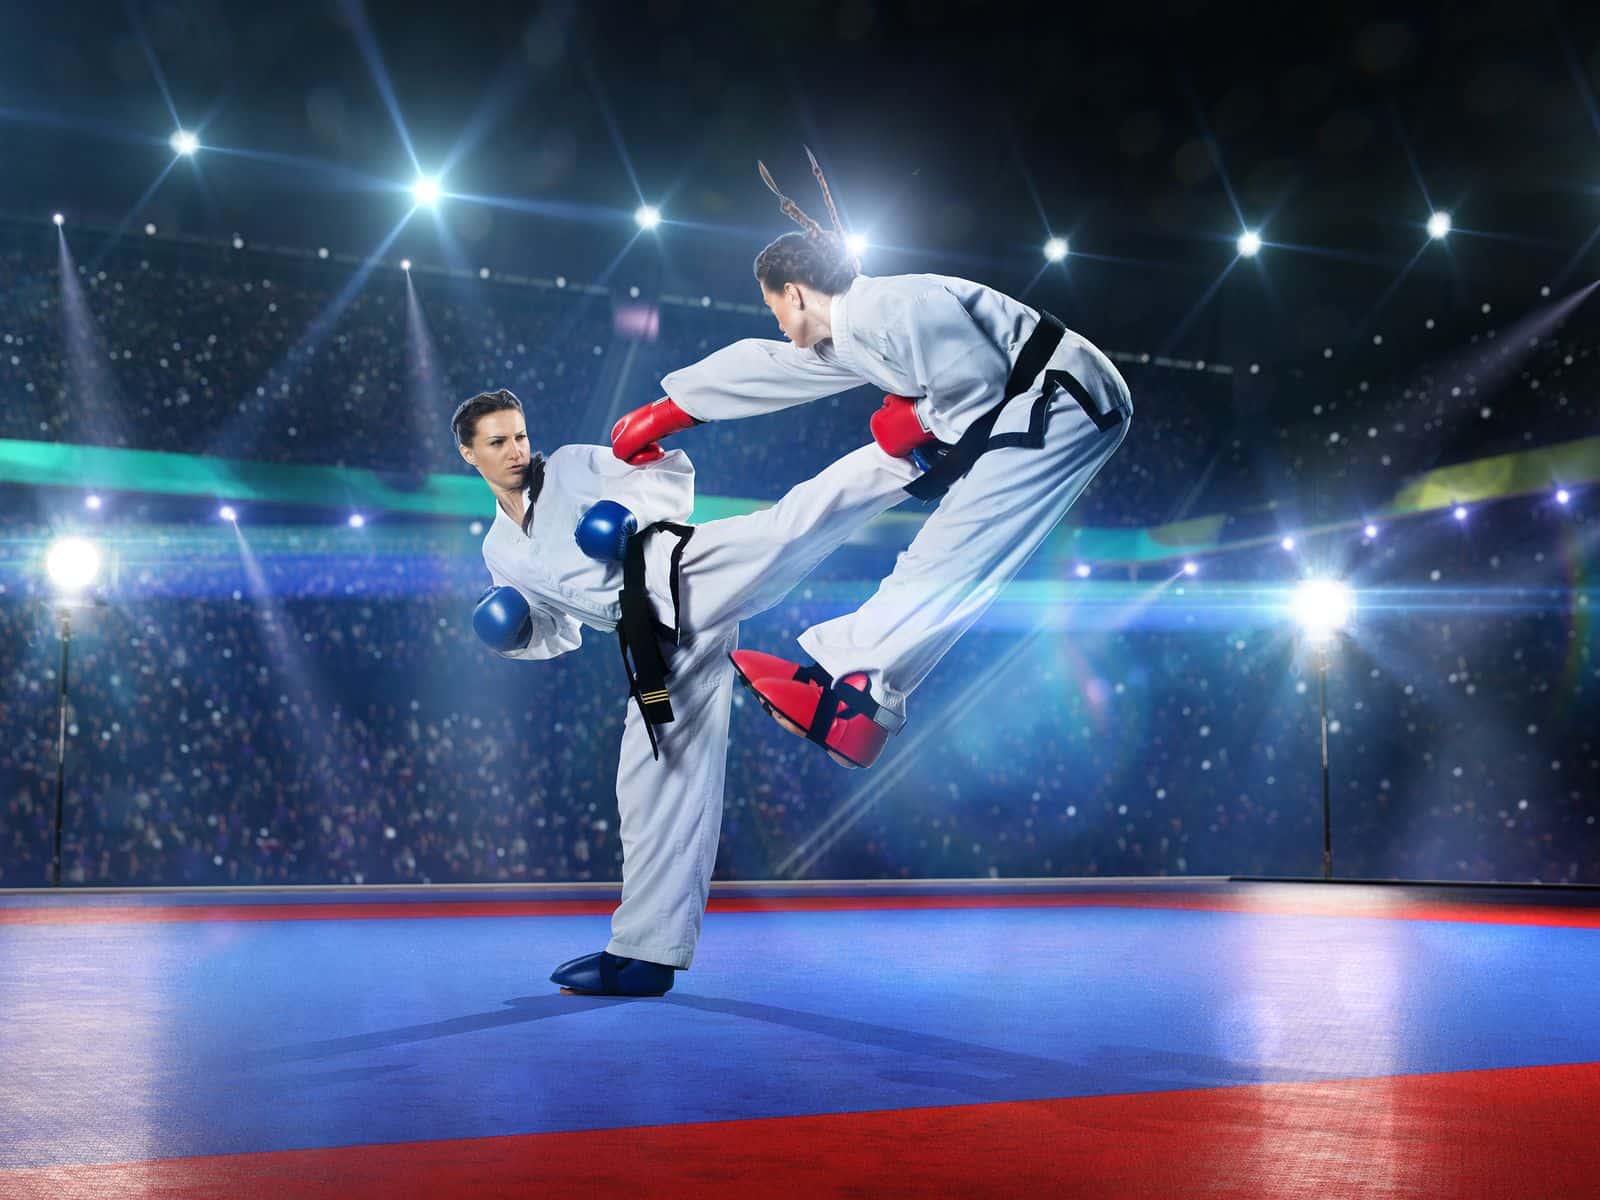 آموزش کاراته از صفر تا صد + حرکات اصلی